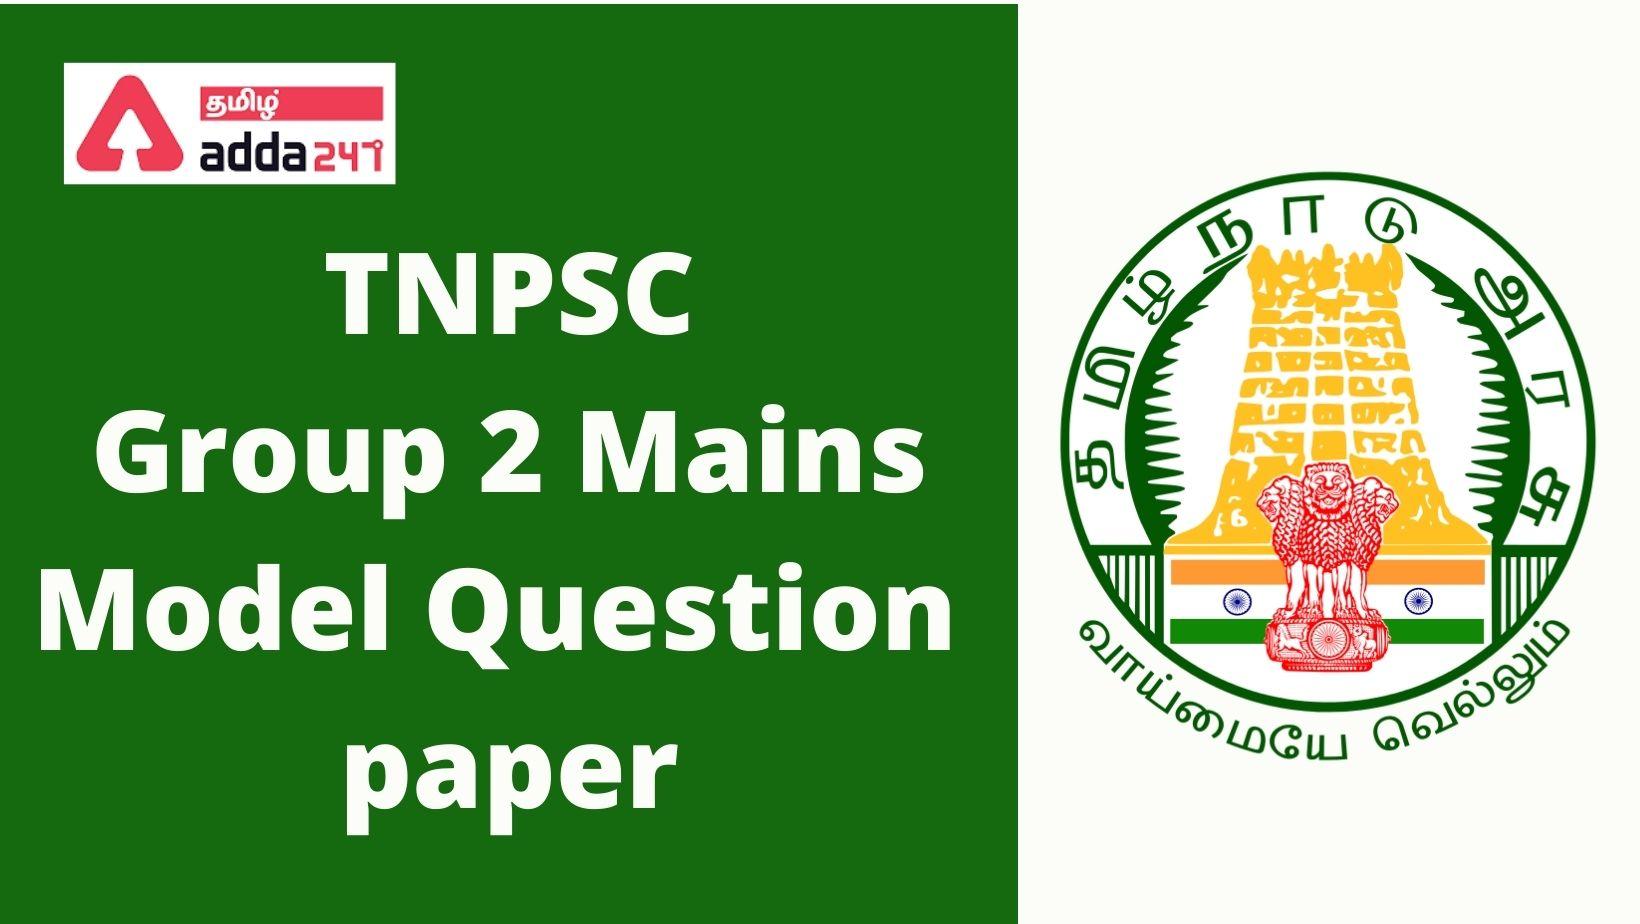 _TNPSC Group 2 Mains Model Question paper (1)